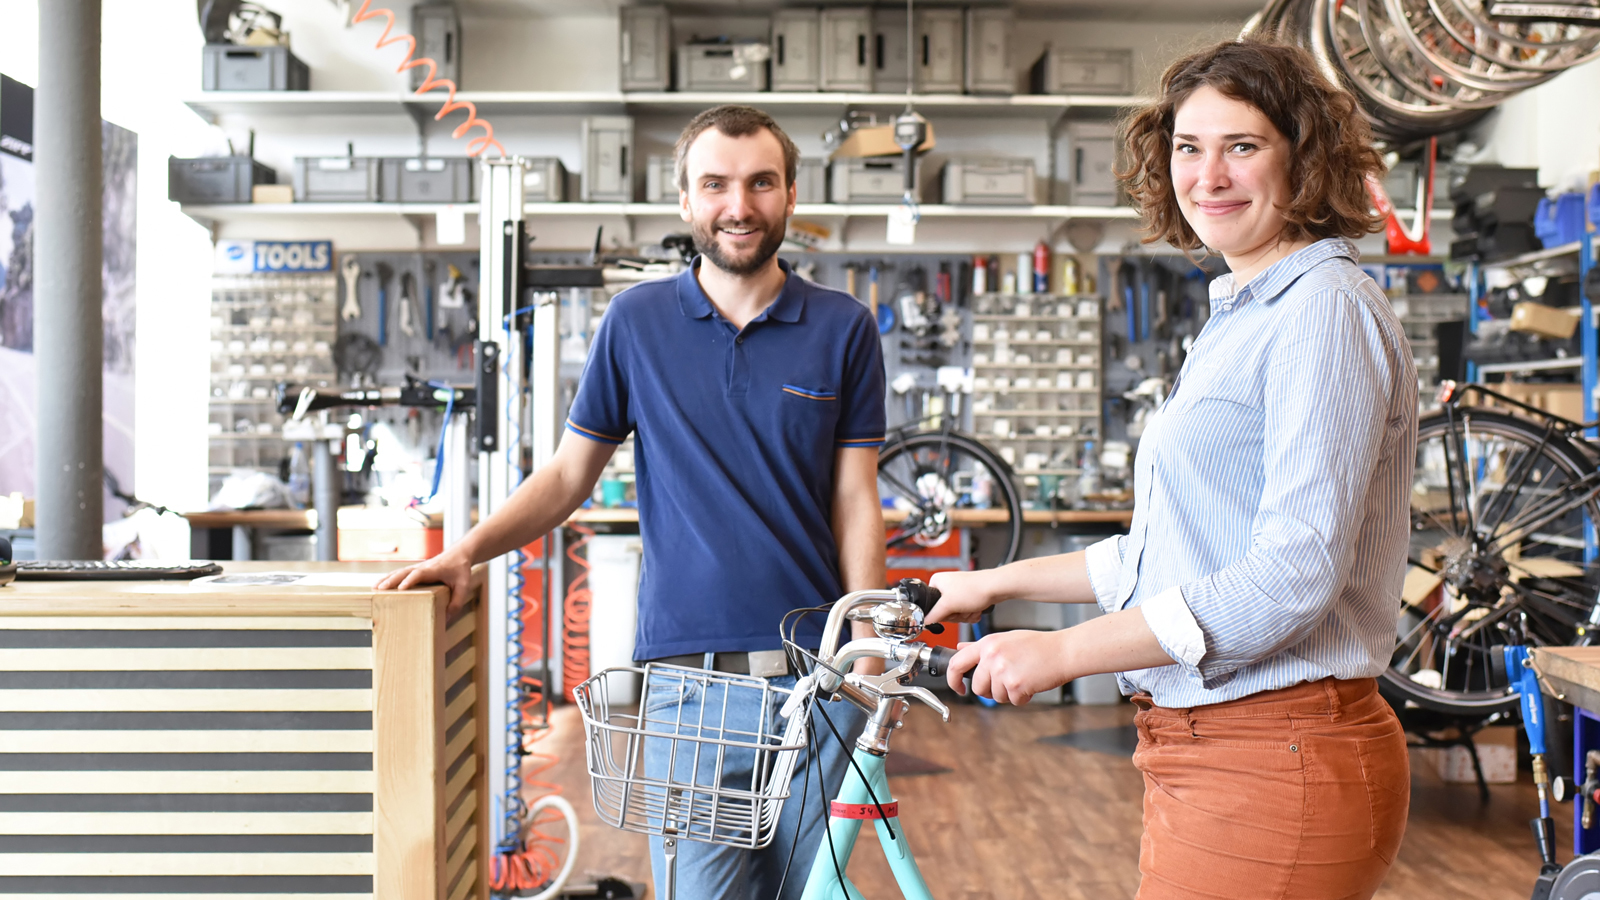 Beratung am POS - Mitarbeiter eines Fahrradgeschäfts berät Kunden über die Zahlungsmethoden von easyCredit-Ratenkauf